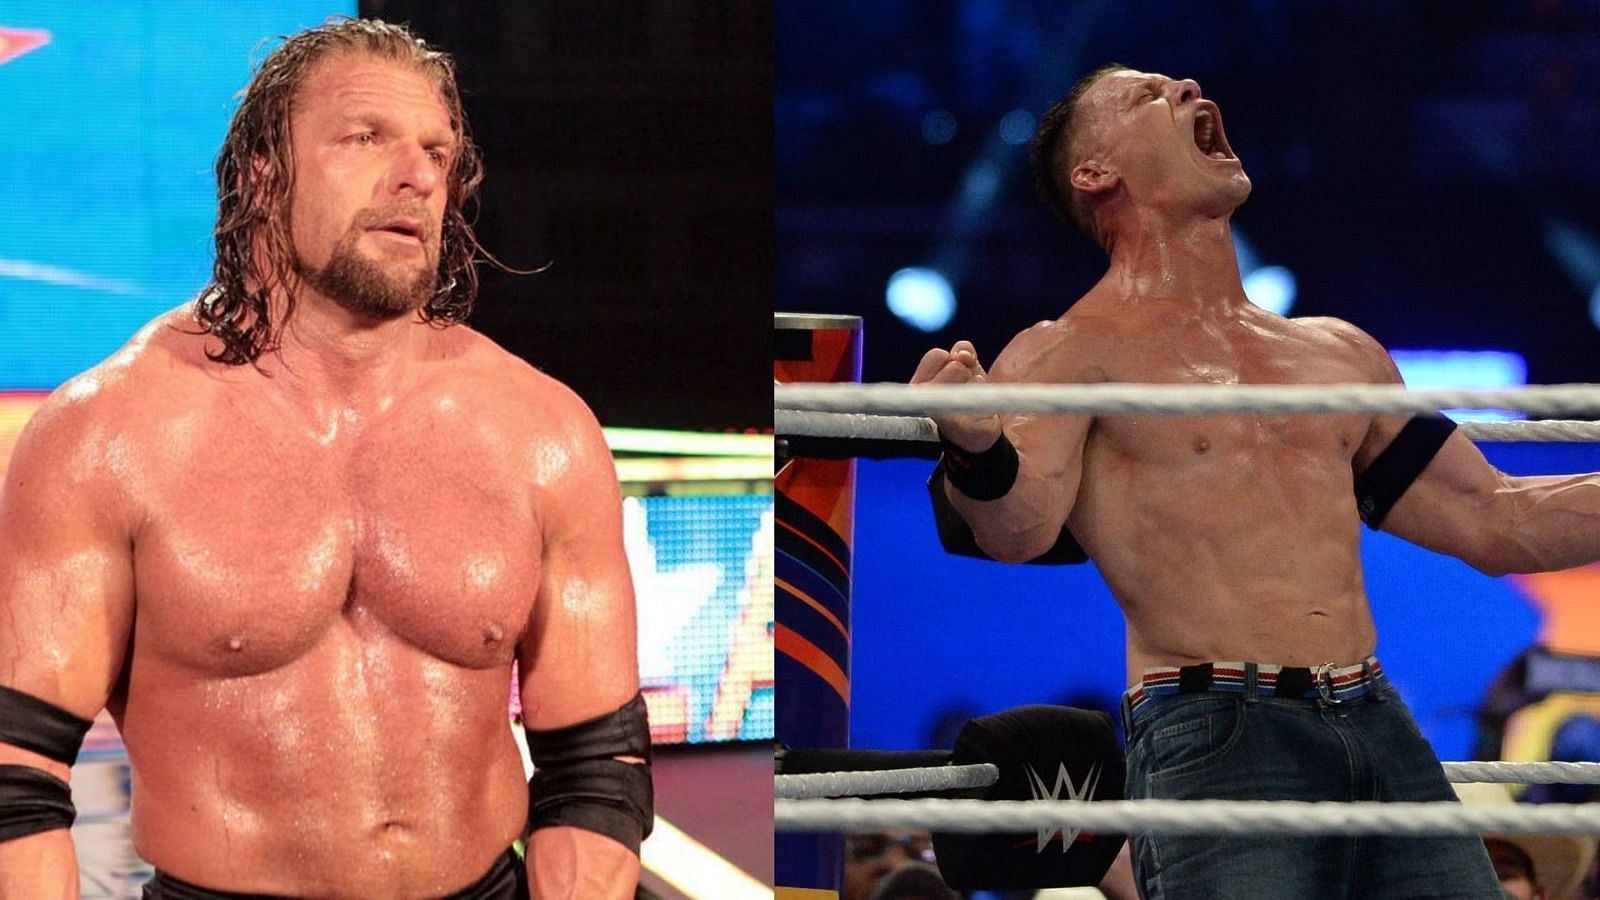 SummerSlam के मेन इवेंट को लेकर WWE ने कई गलतियाँ की है